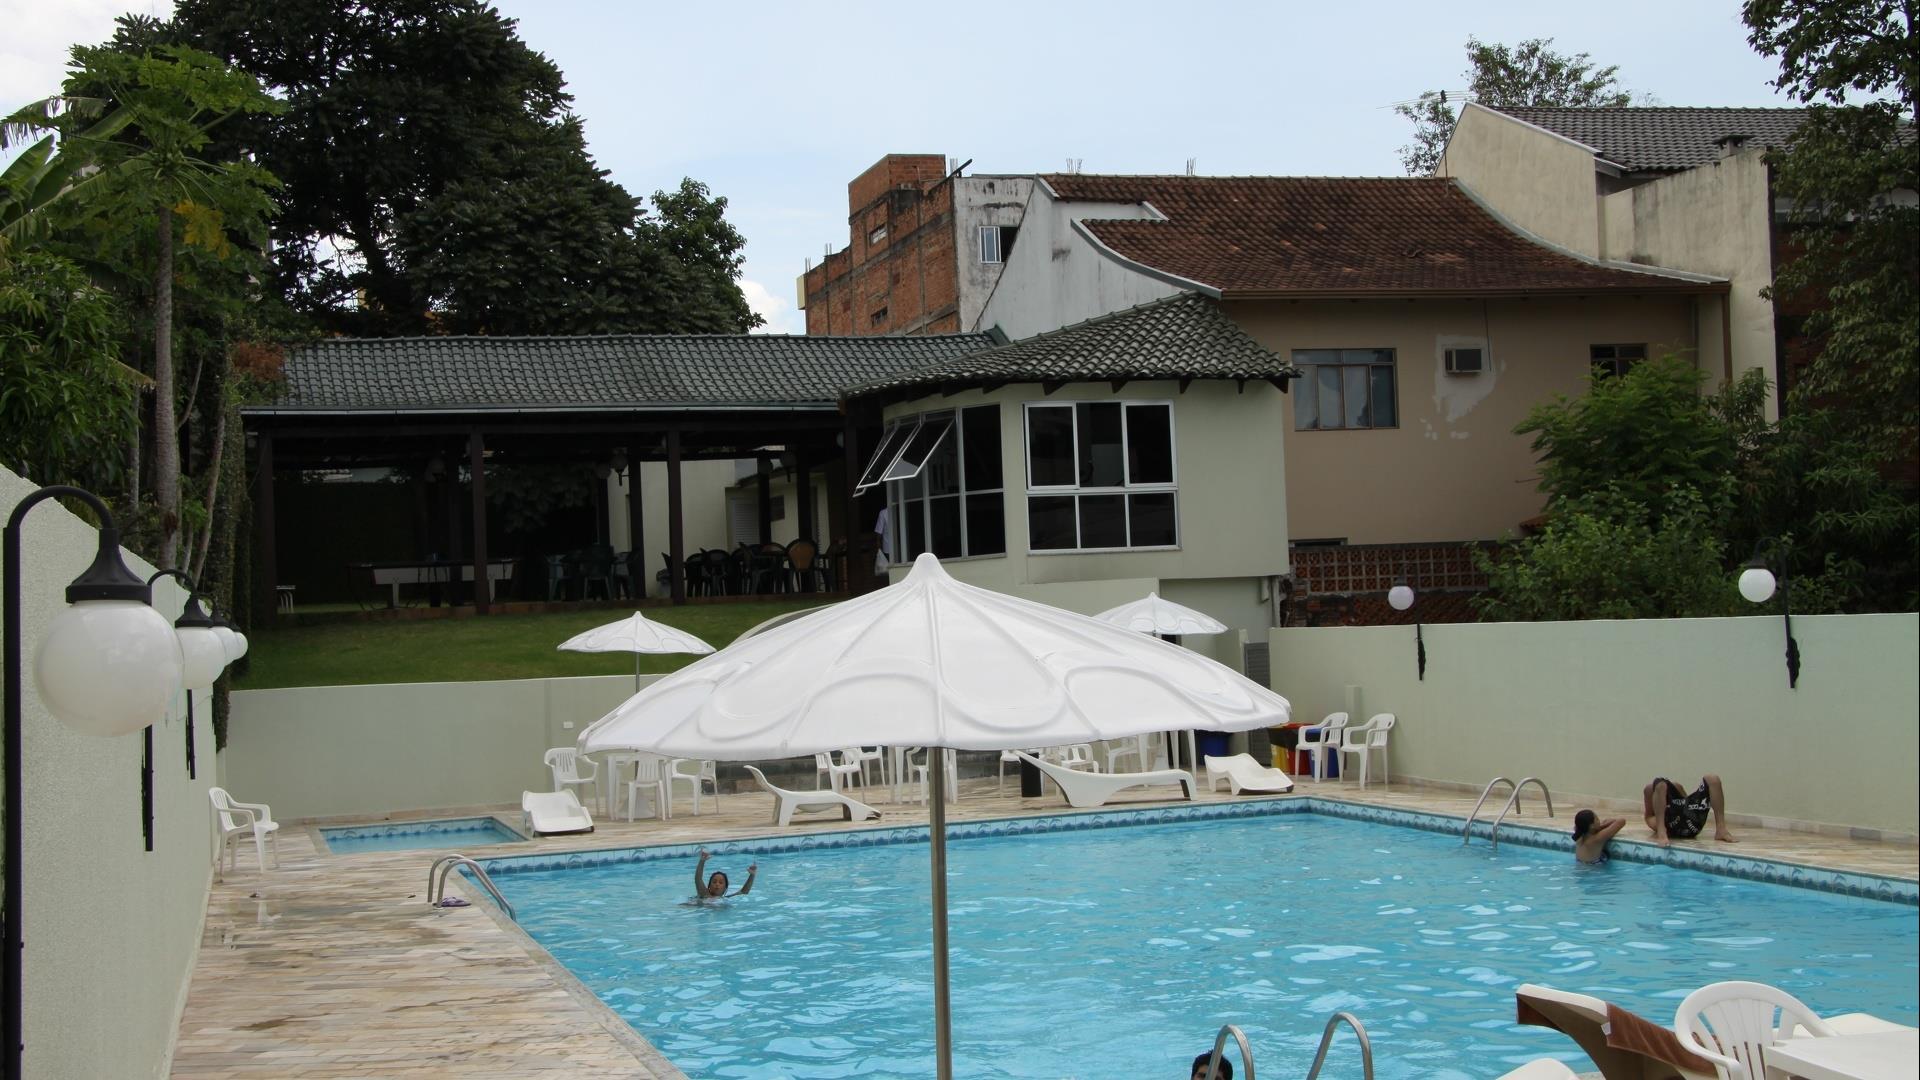 Brasilien Foz do Iguacu: Standard Hotel - Hotel San Rafael 